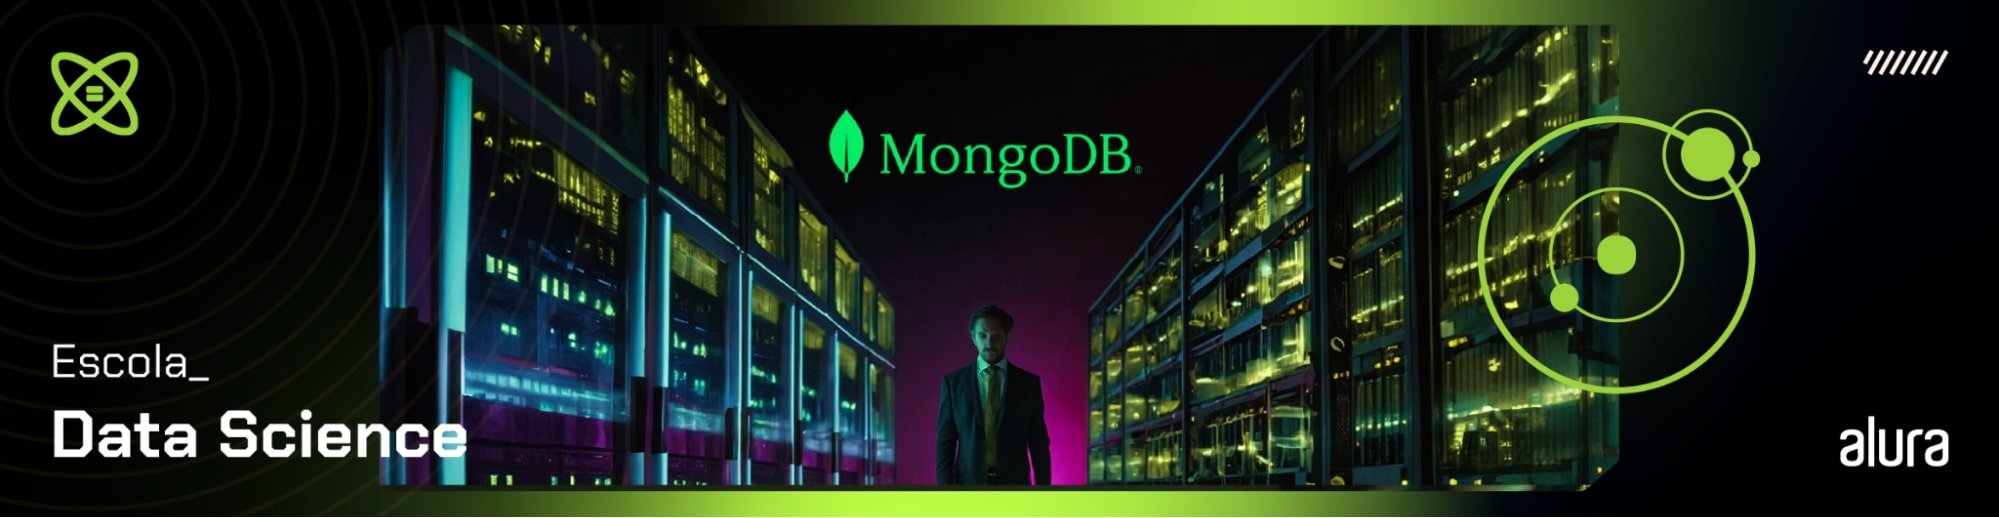 MongoDB: o que é, quais suas características e benefícios e como trabalhar nessa ferramenta